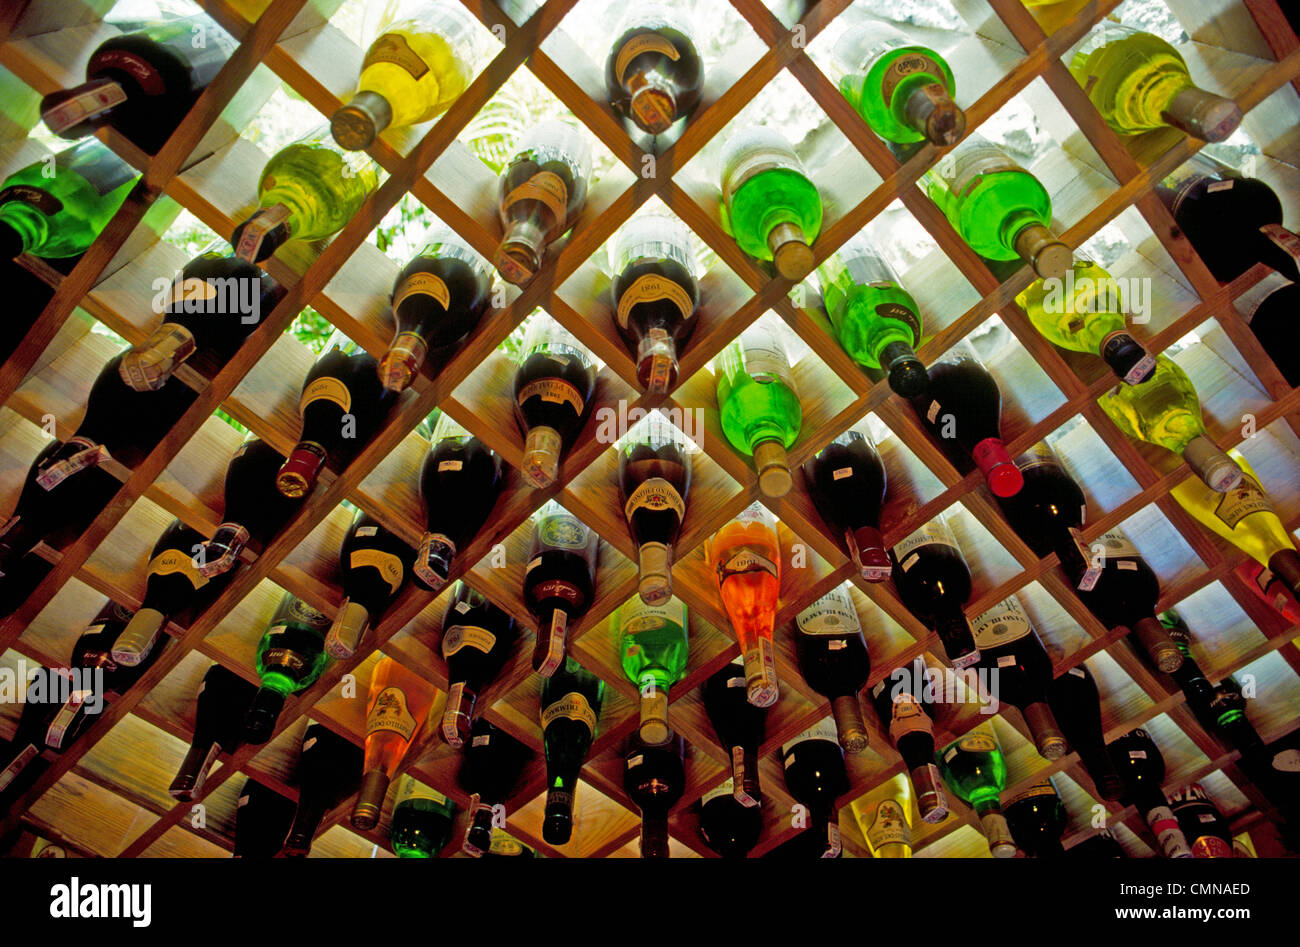 Bunte Flaschen Wein werden in eine hölzerne Weinregal angezeigt, die gegen  eine beleuchtete Wand in einem Restaurant in der Schweiz ist  Stockfotografie - Alamy